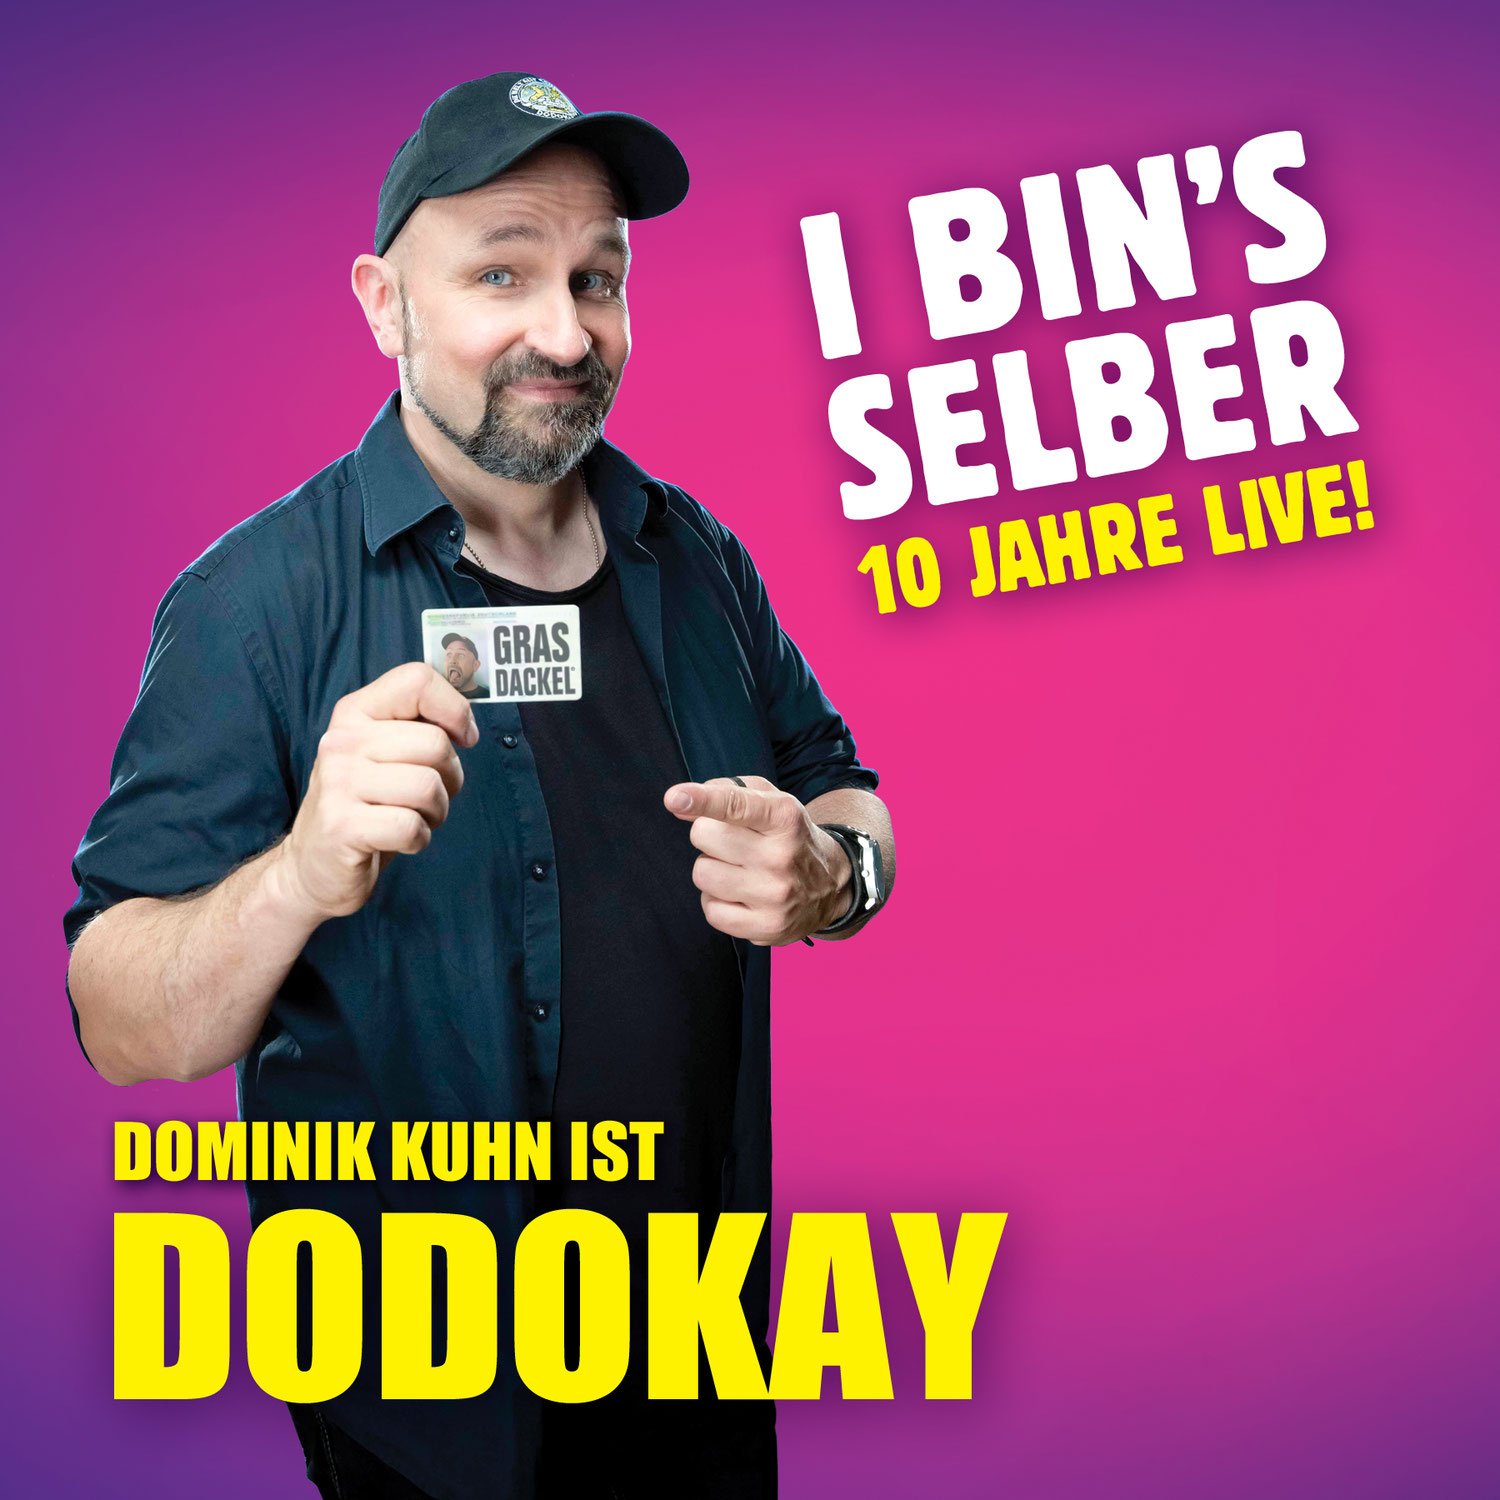 Dodokay - I bin's selber